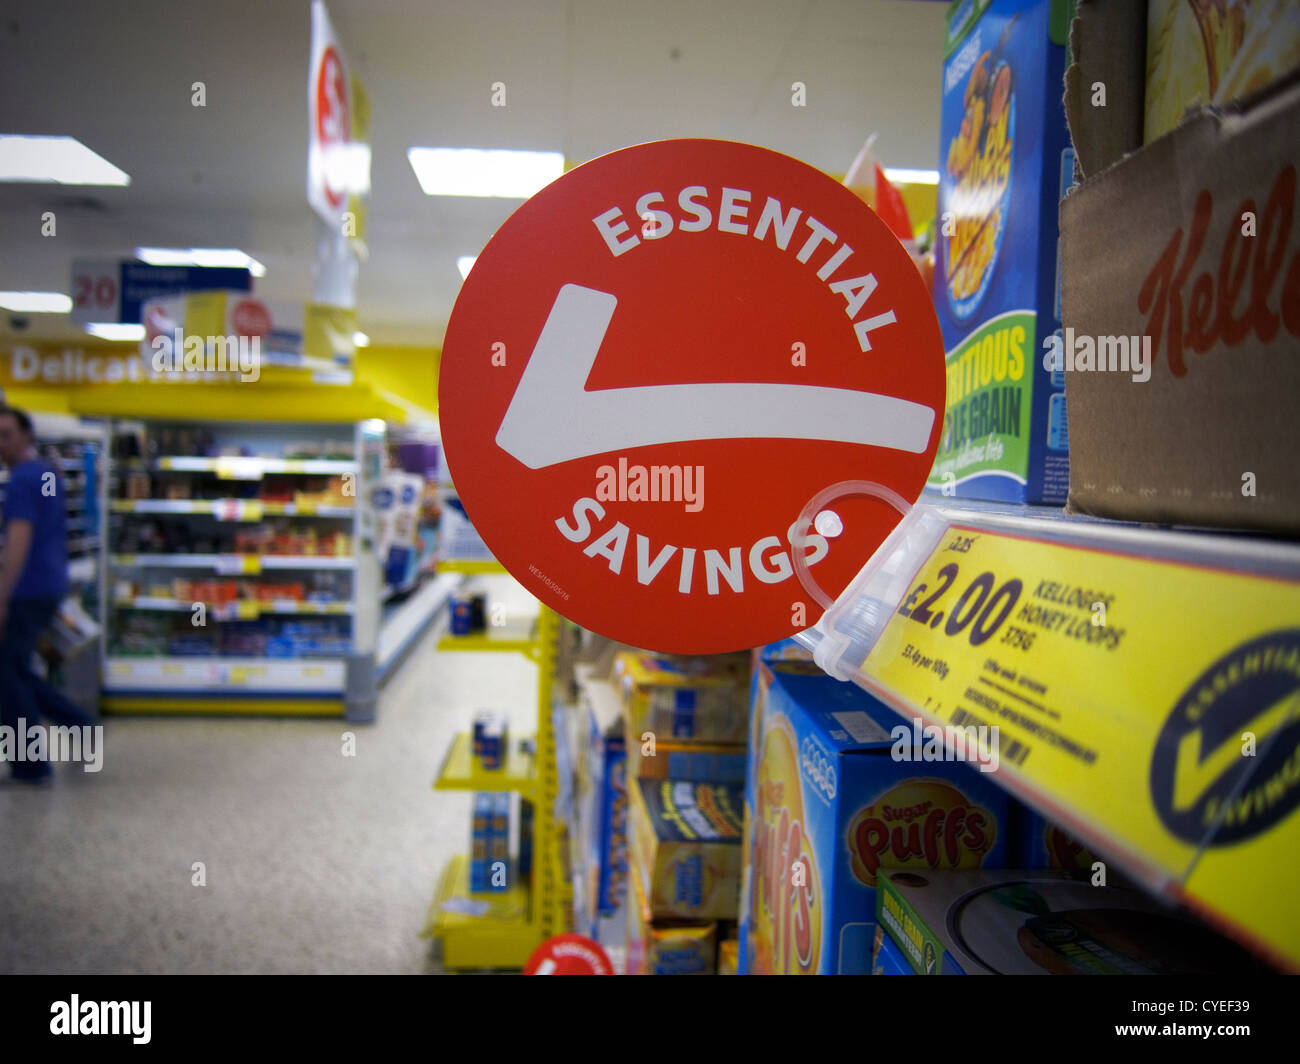 Signes/signalisation dans un supermarché store au Royaume-Uni. 'Essentiel' épargne offre spéciale signe. Banque D'Images